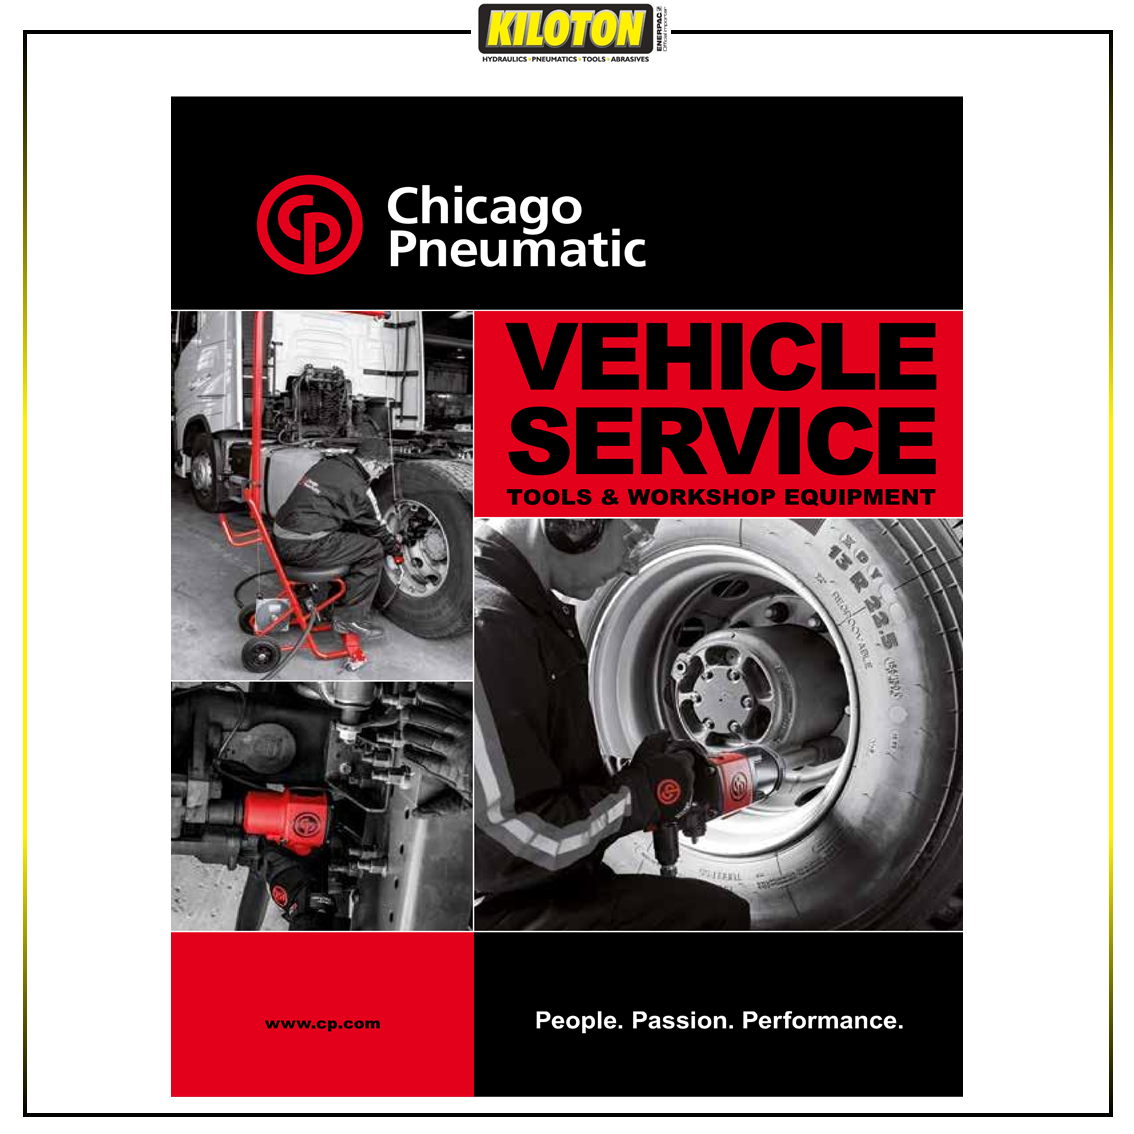 KILATON - Chicago Vehicle-Service-Tools Catalogue